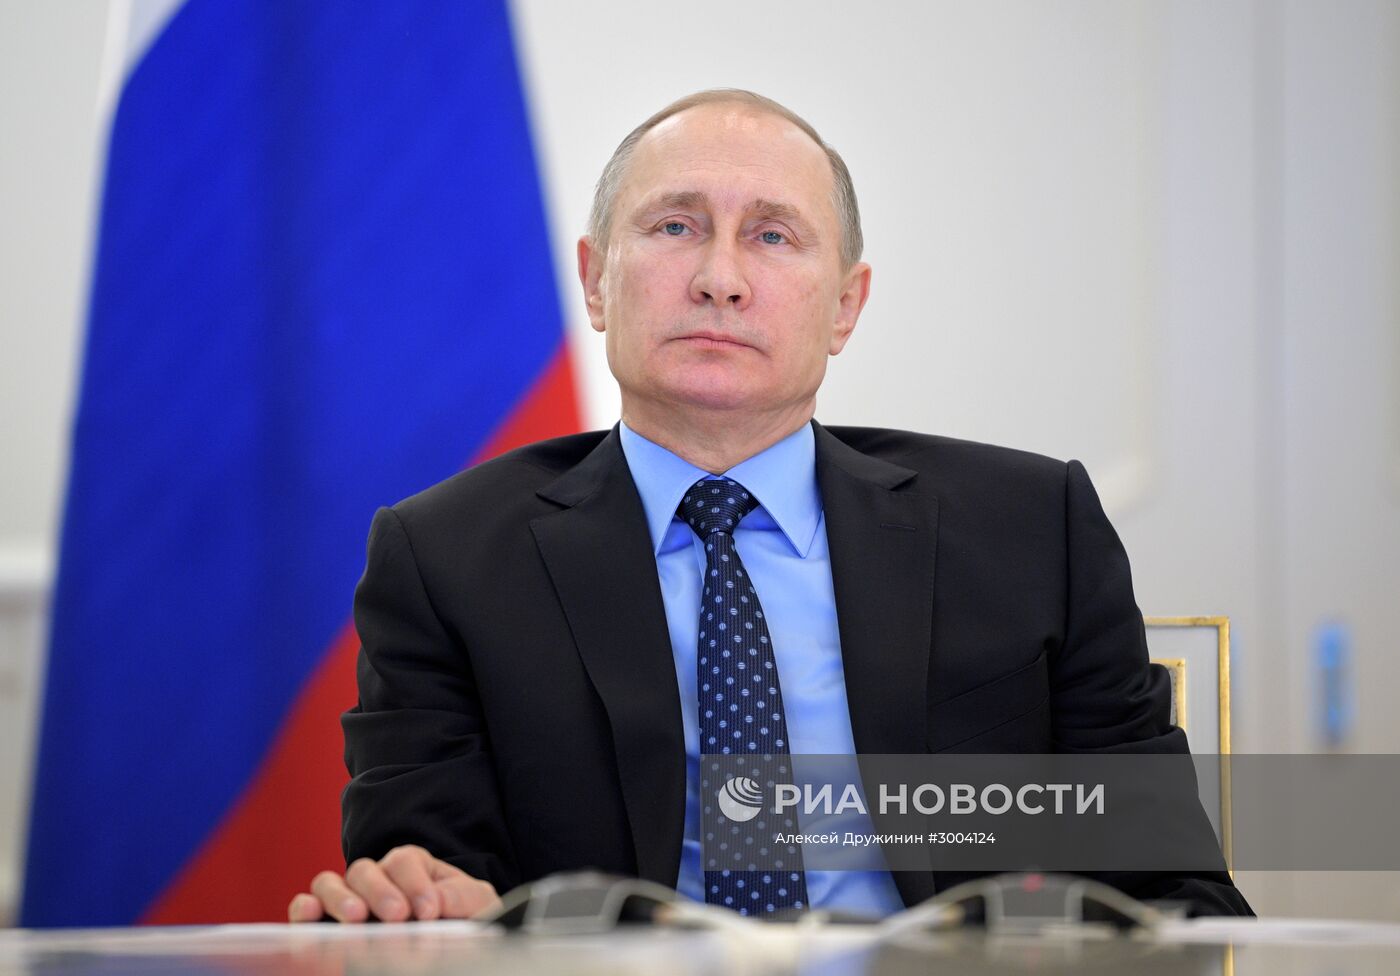 Президент РФ В. Путин провел видеоконференцию по вопросу старта подачи газа в Крым из материковой России